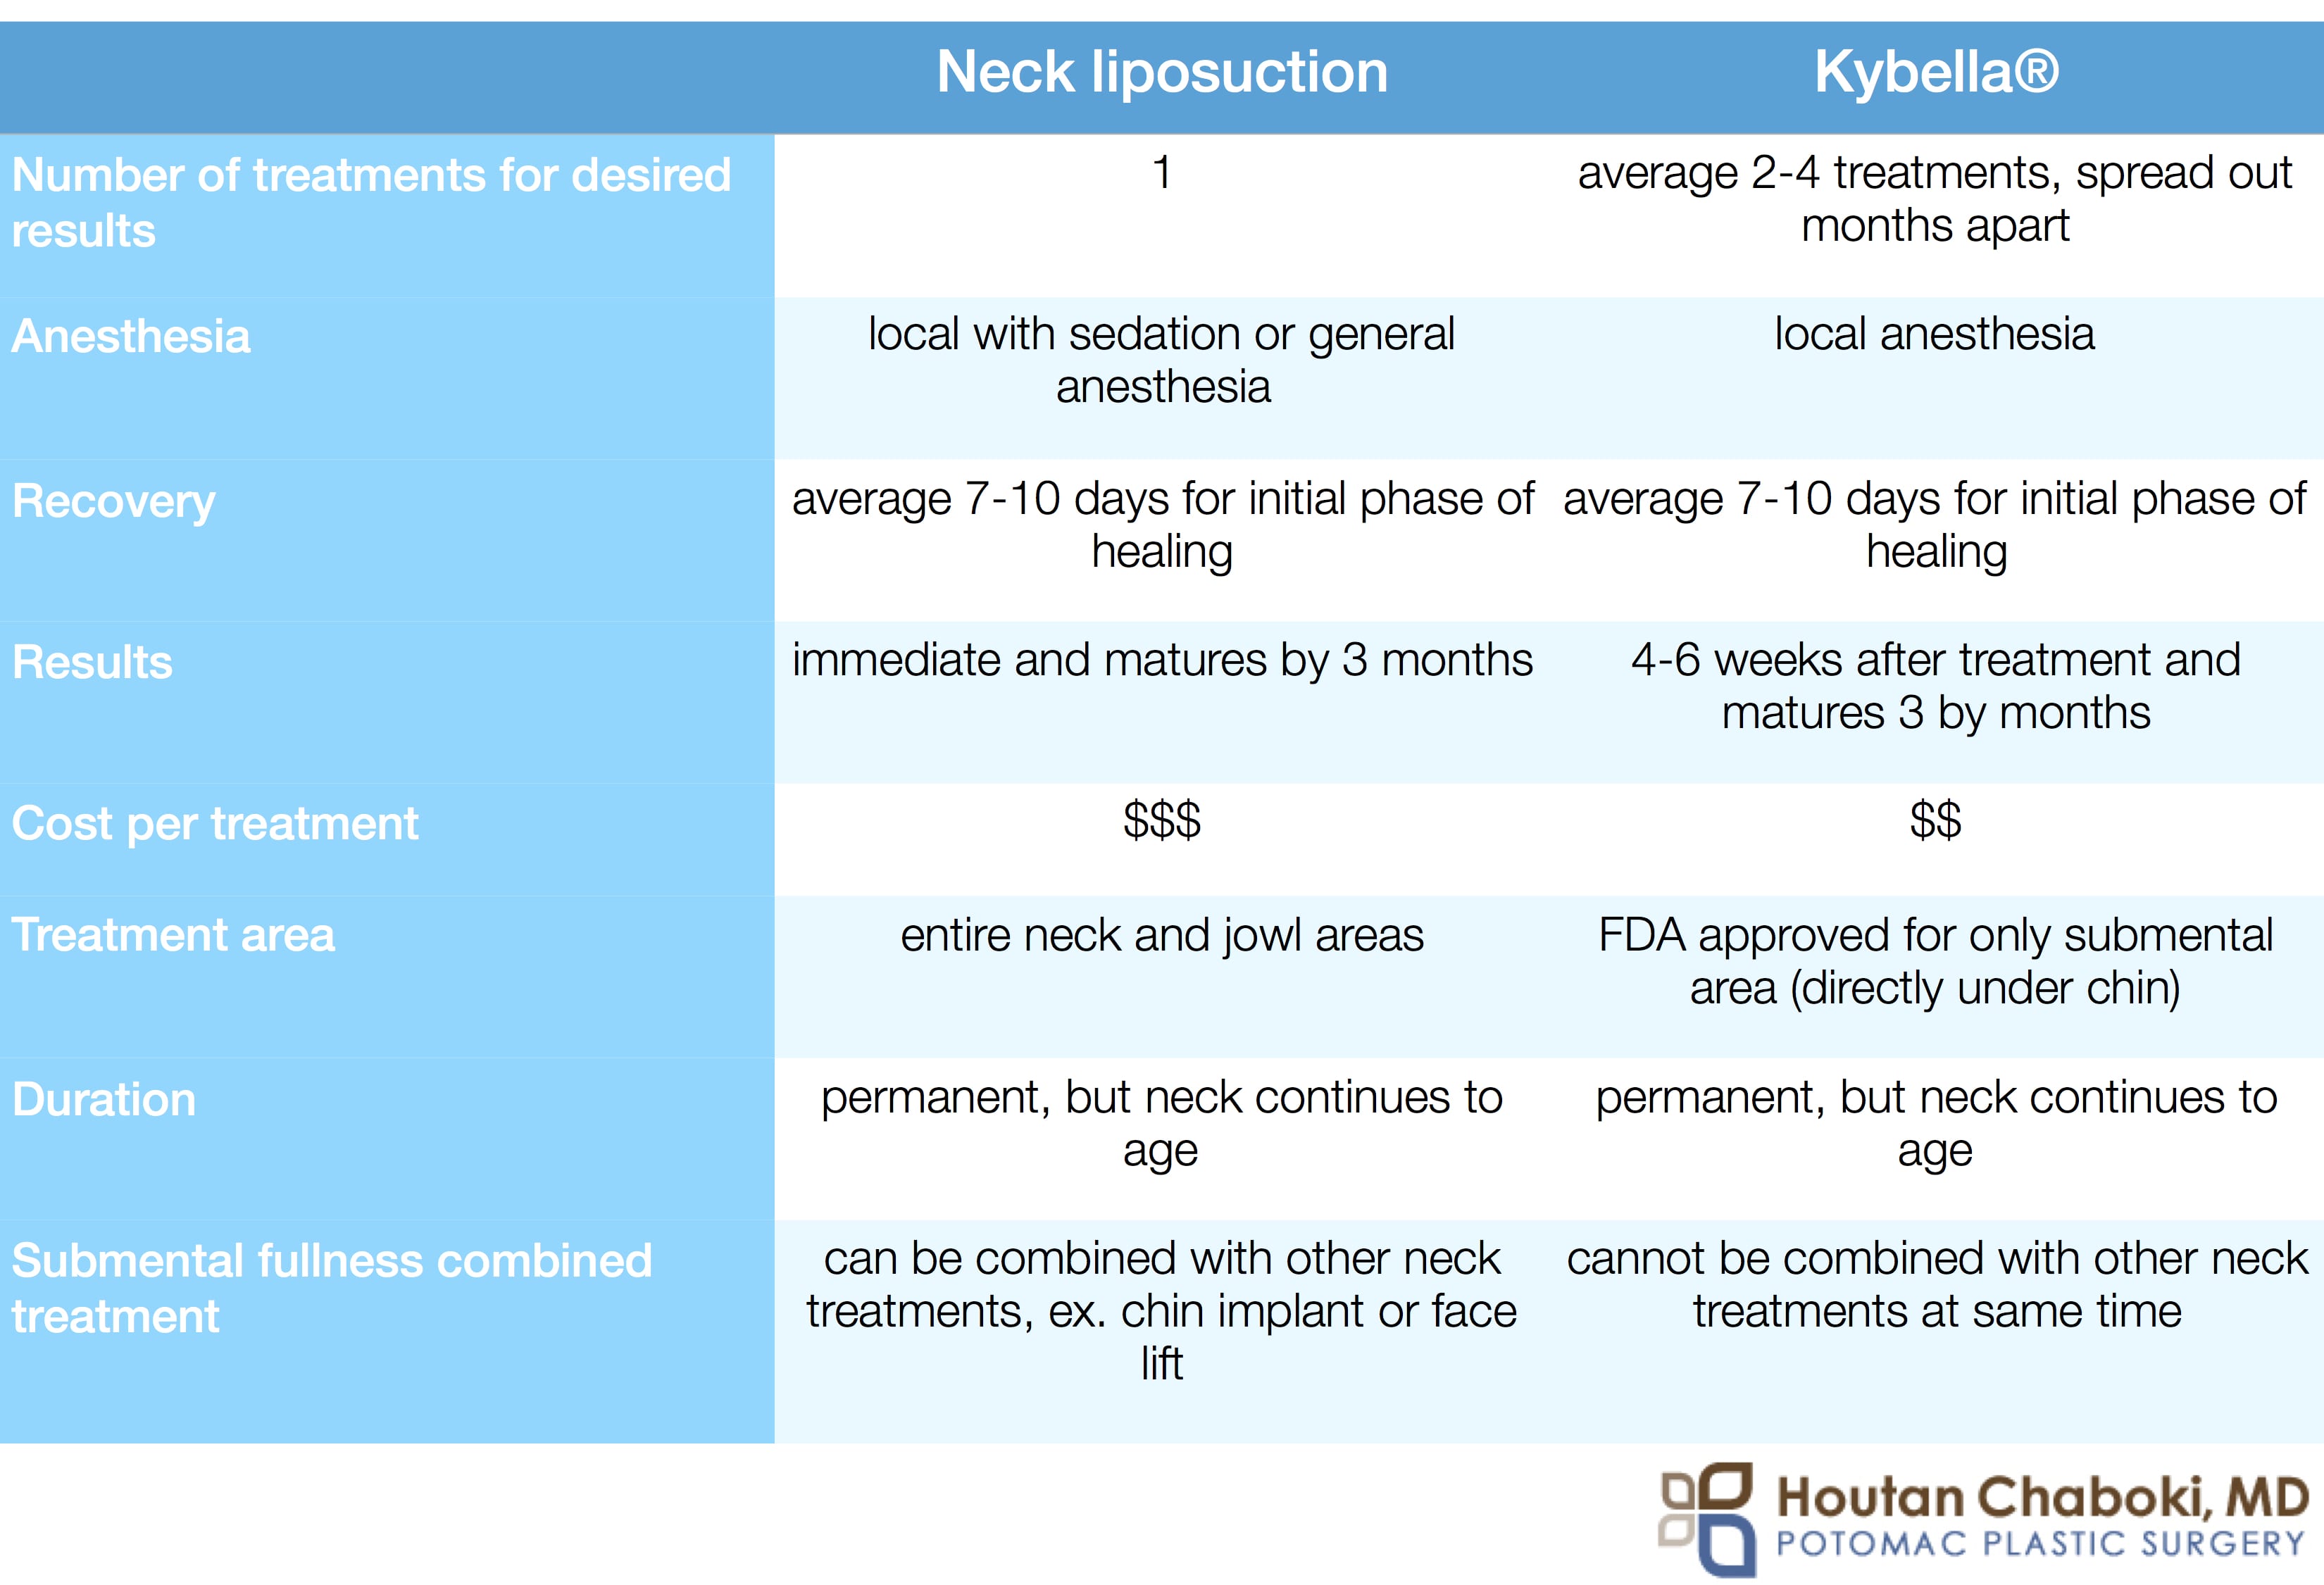 Neck liposuction vs. Kybella® for treatment of submental fullness